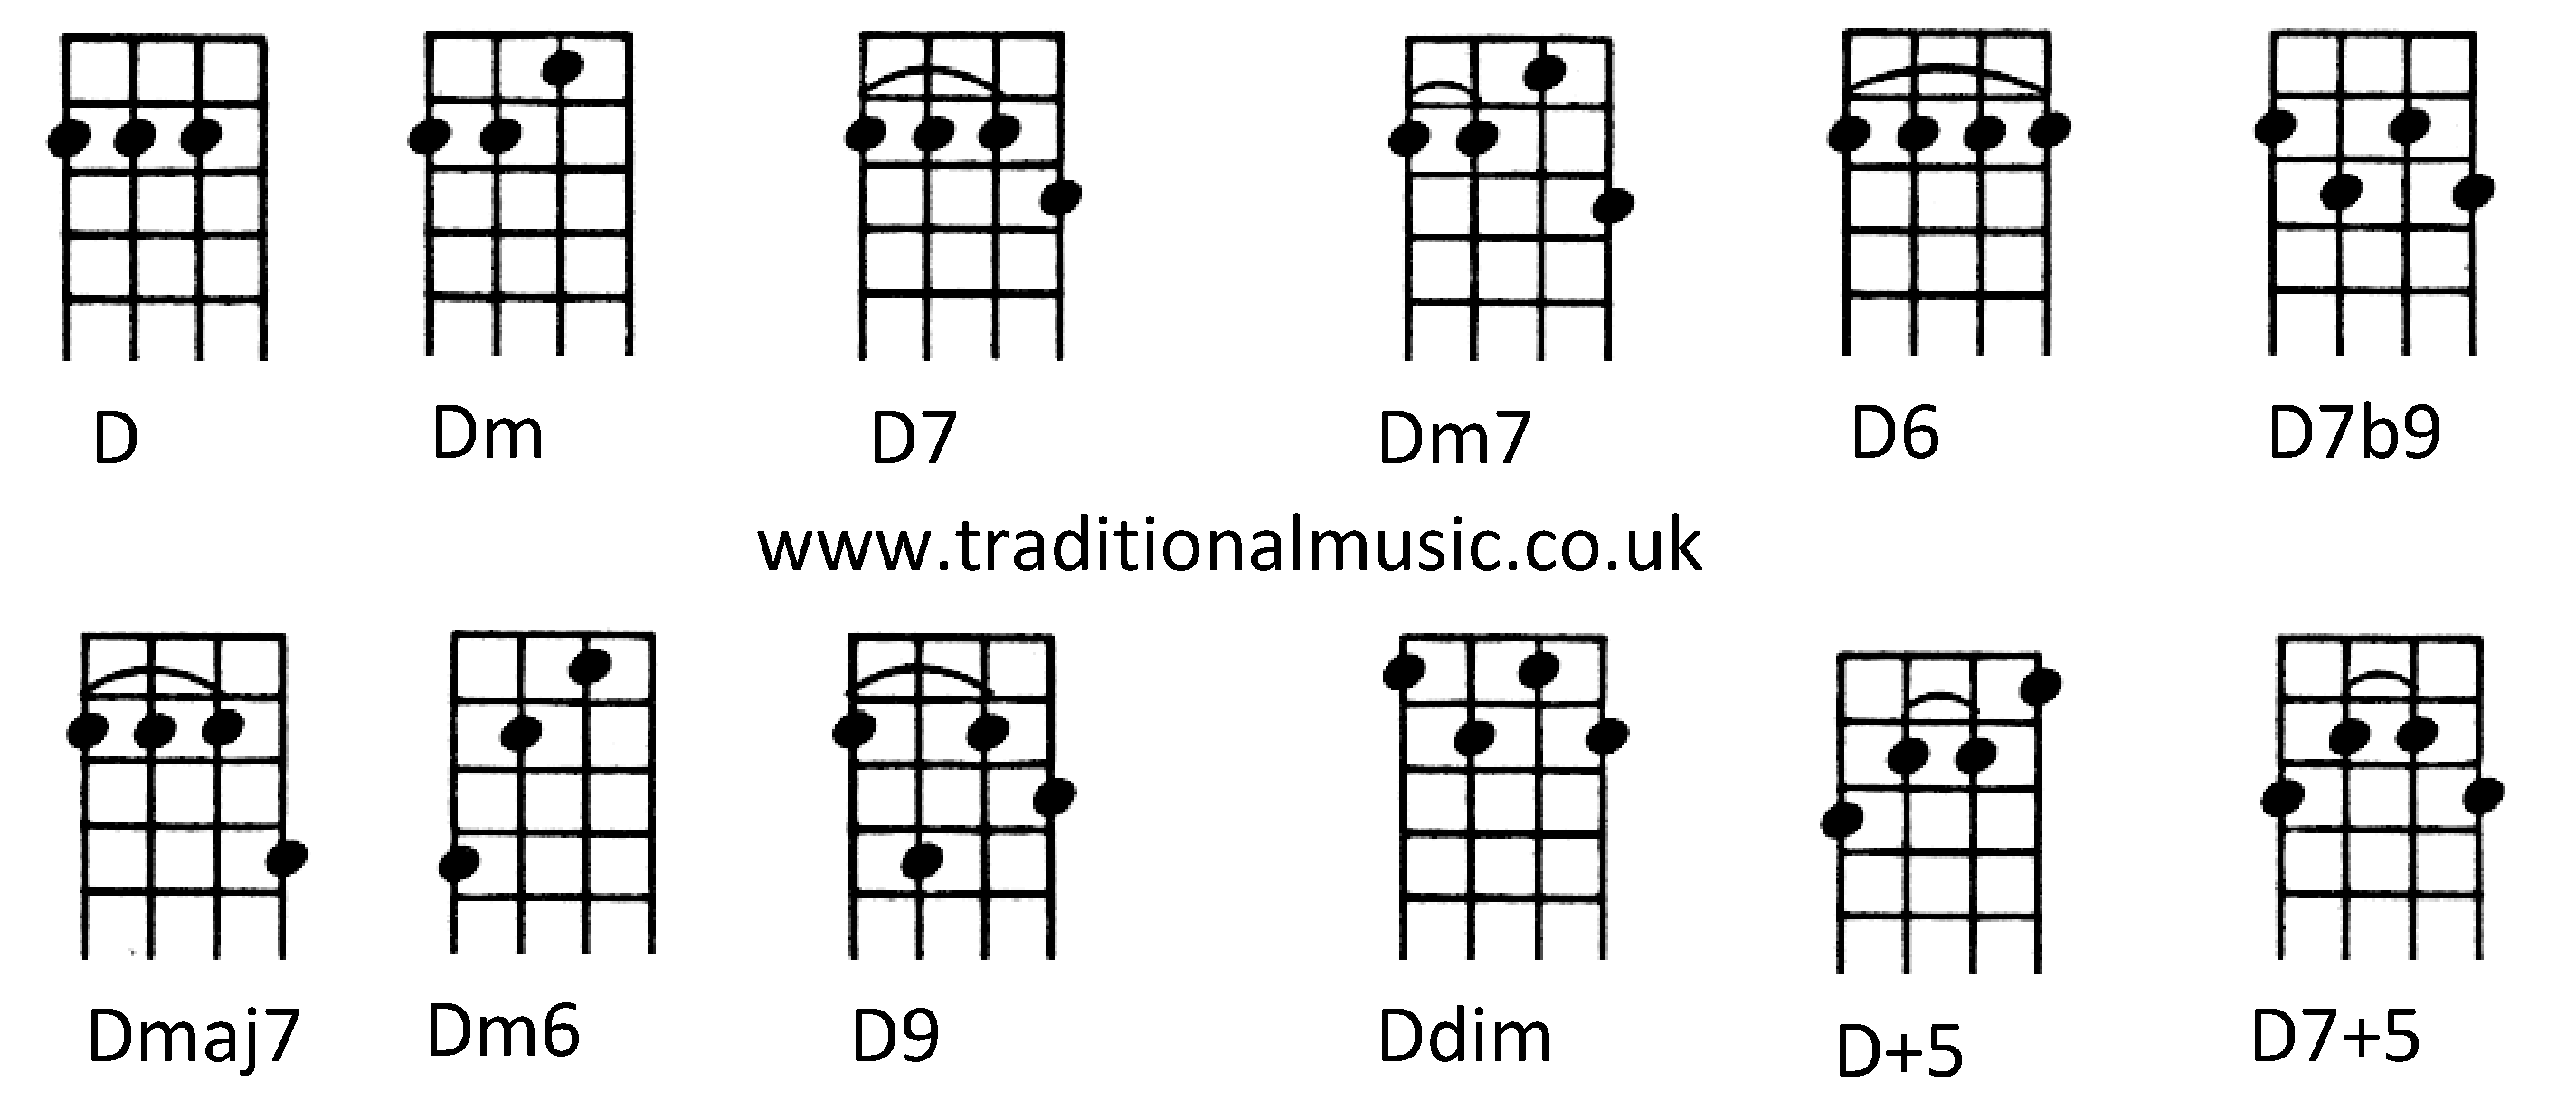 Chords for Ukulele (C tuning) D Dm D7 Dm7 D6 D7b9 Dmaj7 Dm6 D9 Ddim D+5 D7+5